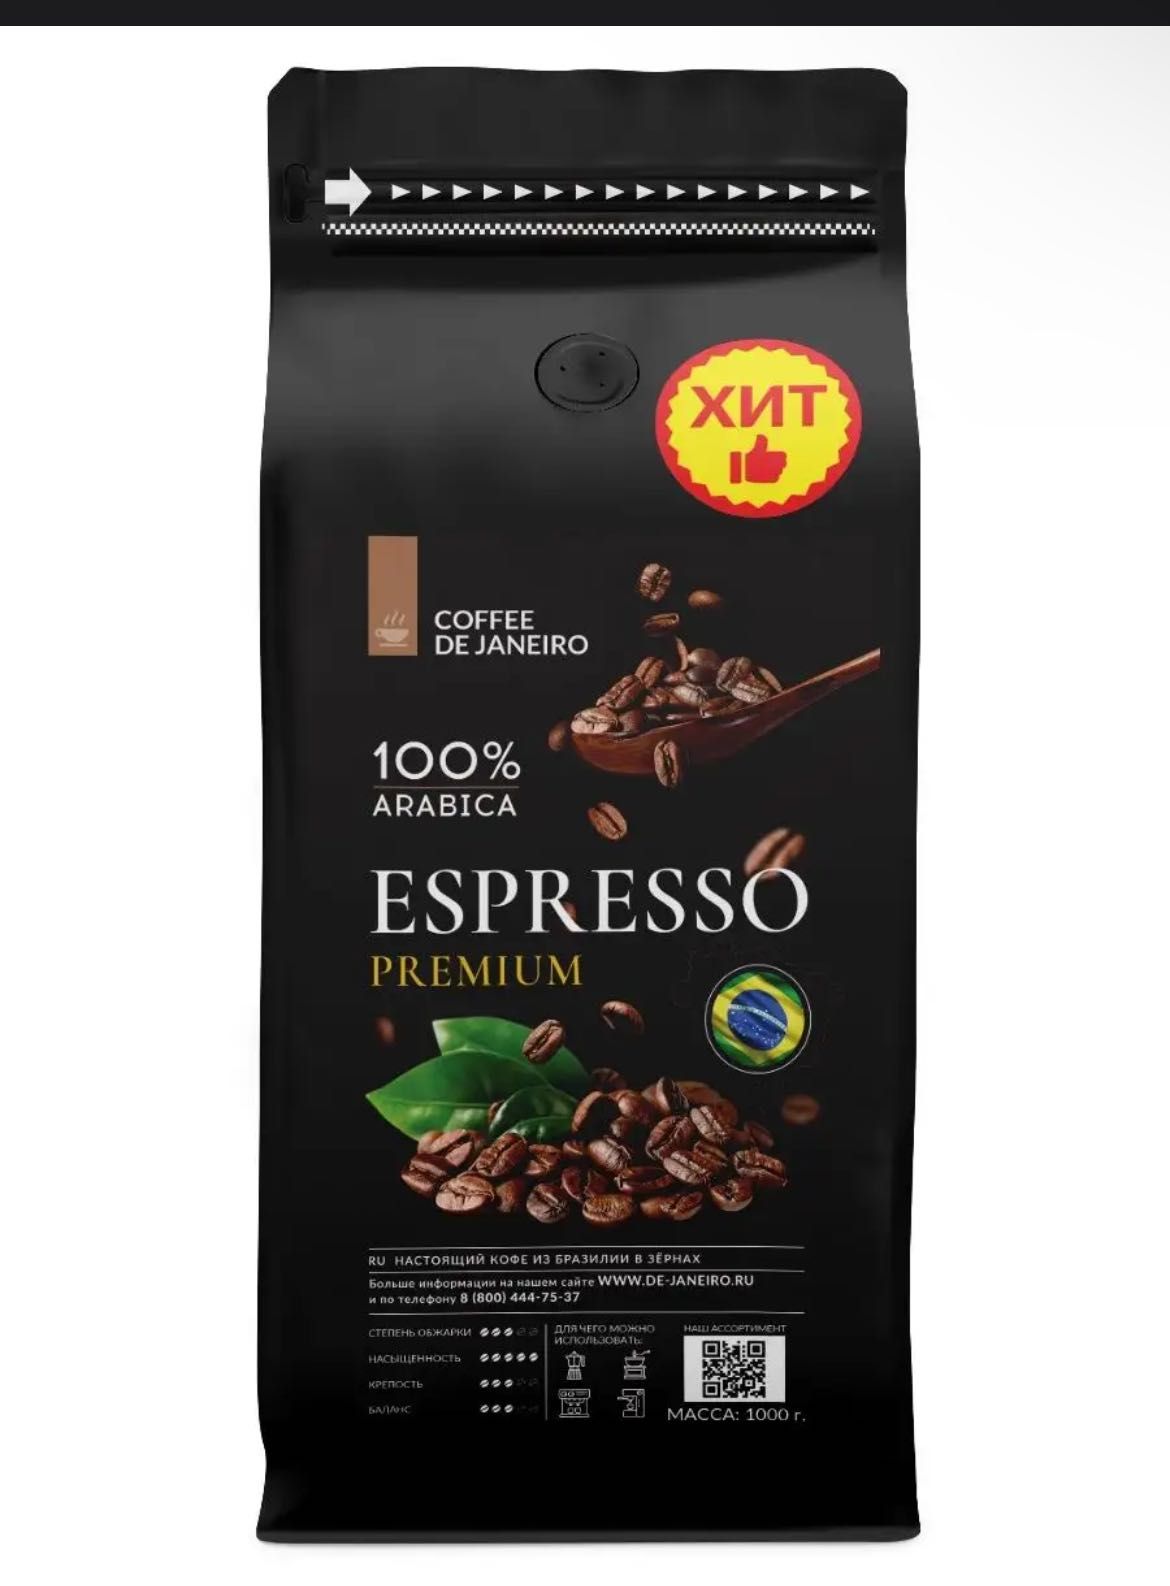 COFFEE DE JANEIRO (ДЕ ЖАНЕЙРО) - настоящий
бразильский кофе в зернах.